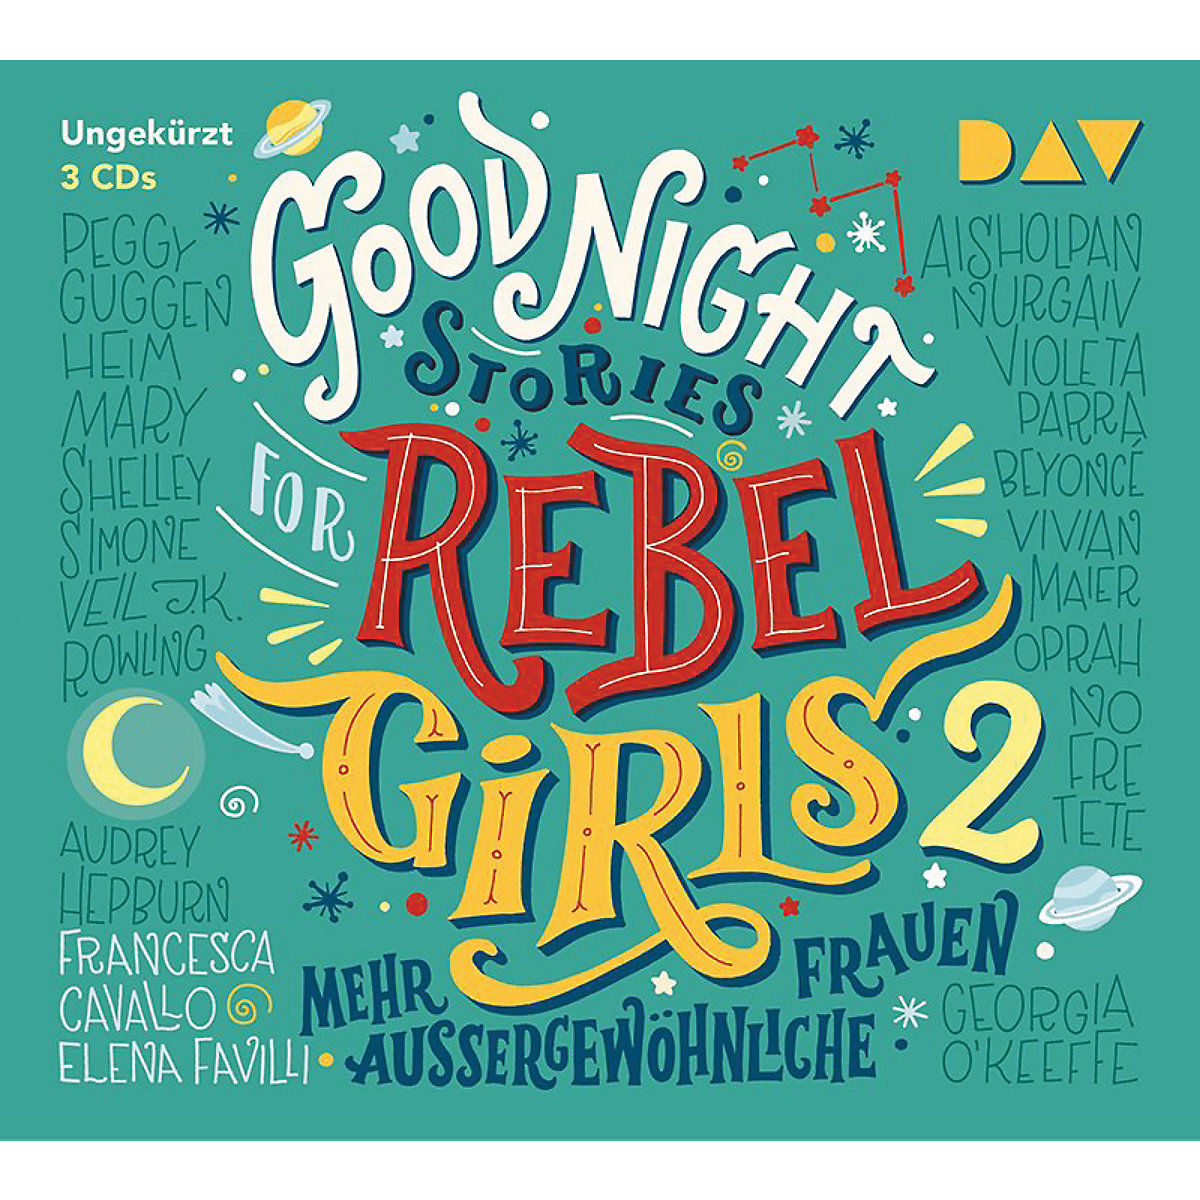 Good Night Stories for Rebel Girls: Mehr außergewöhnliche Frauen 3 Audio-CDs